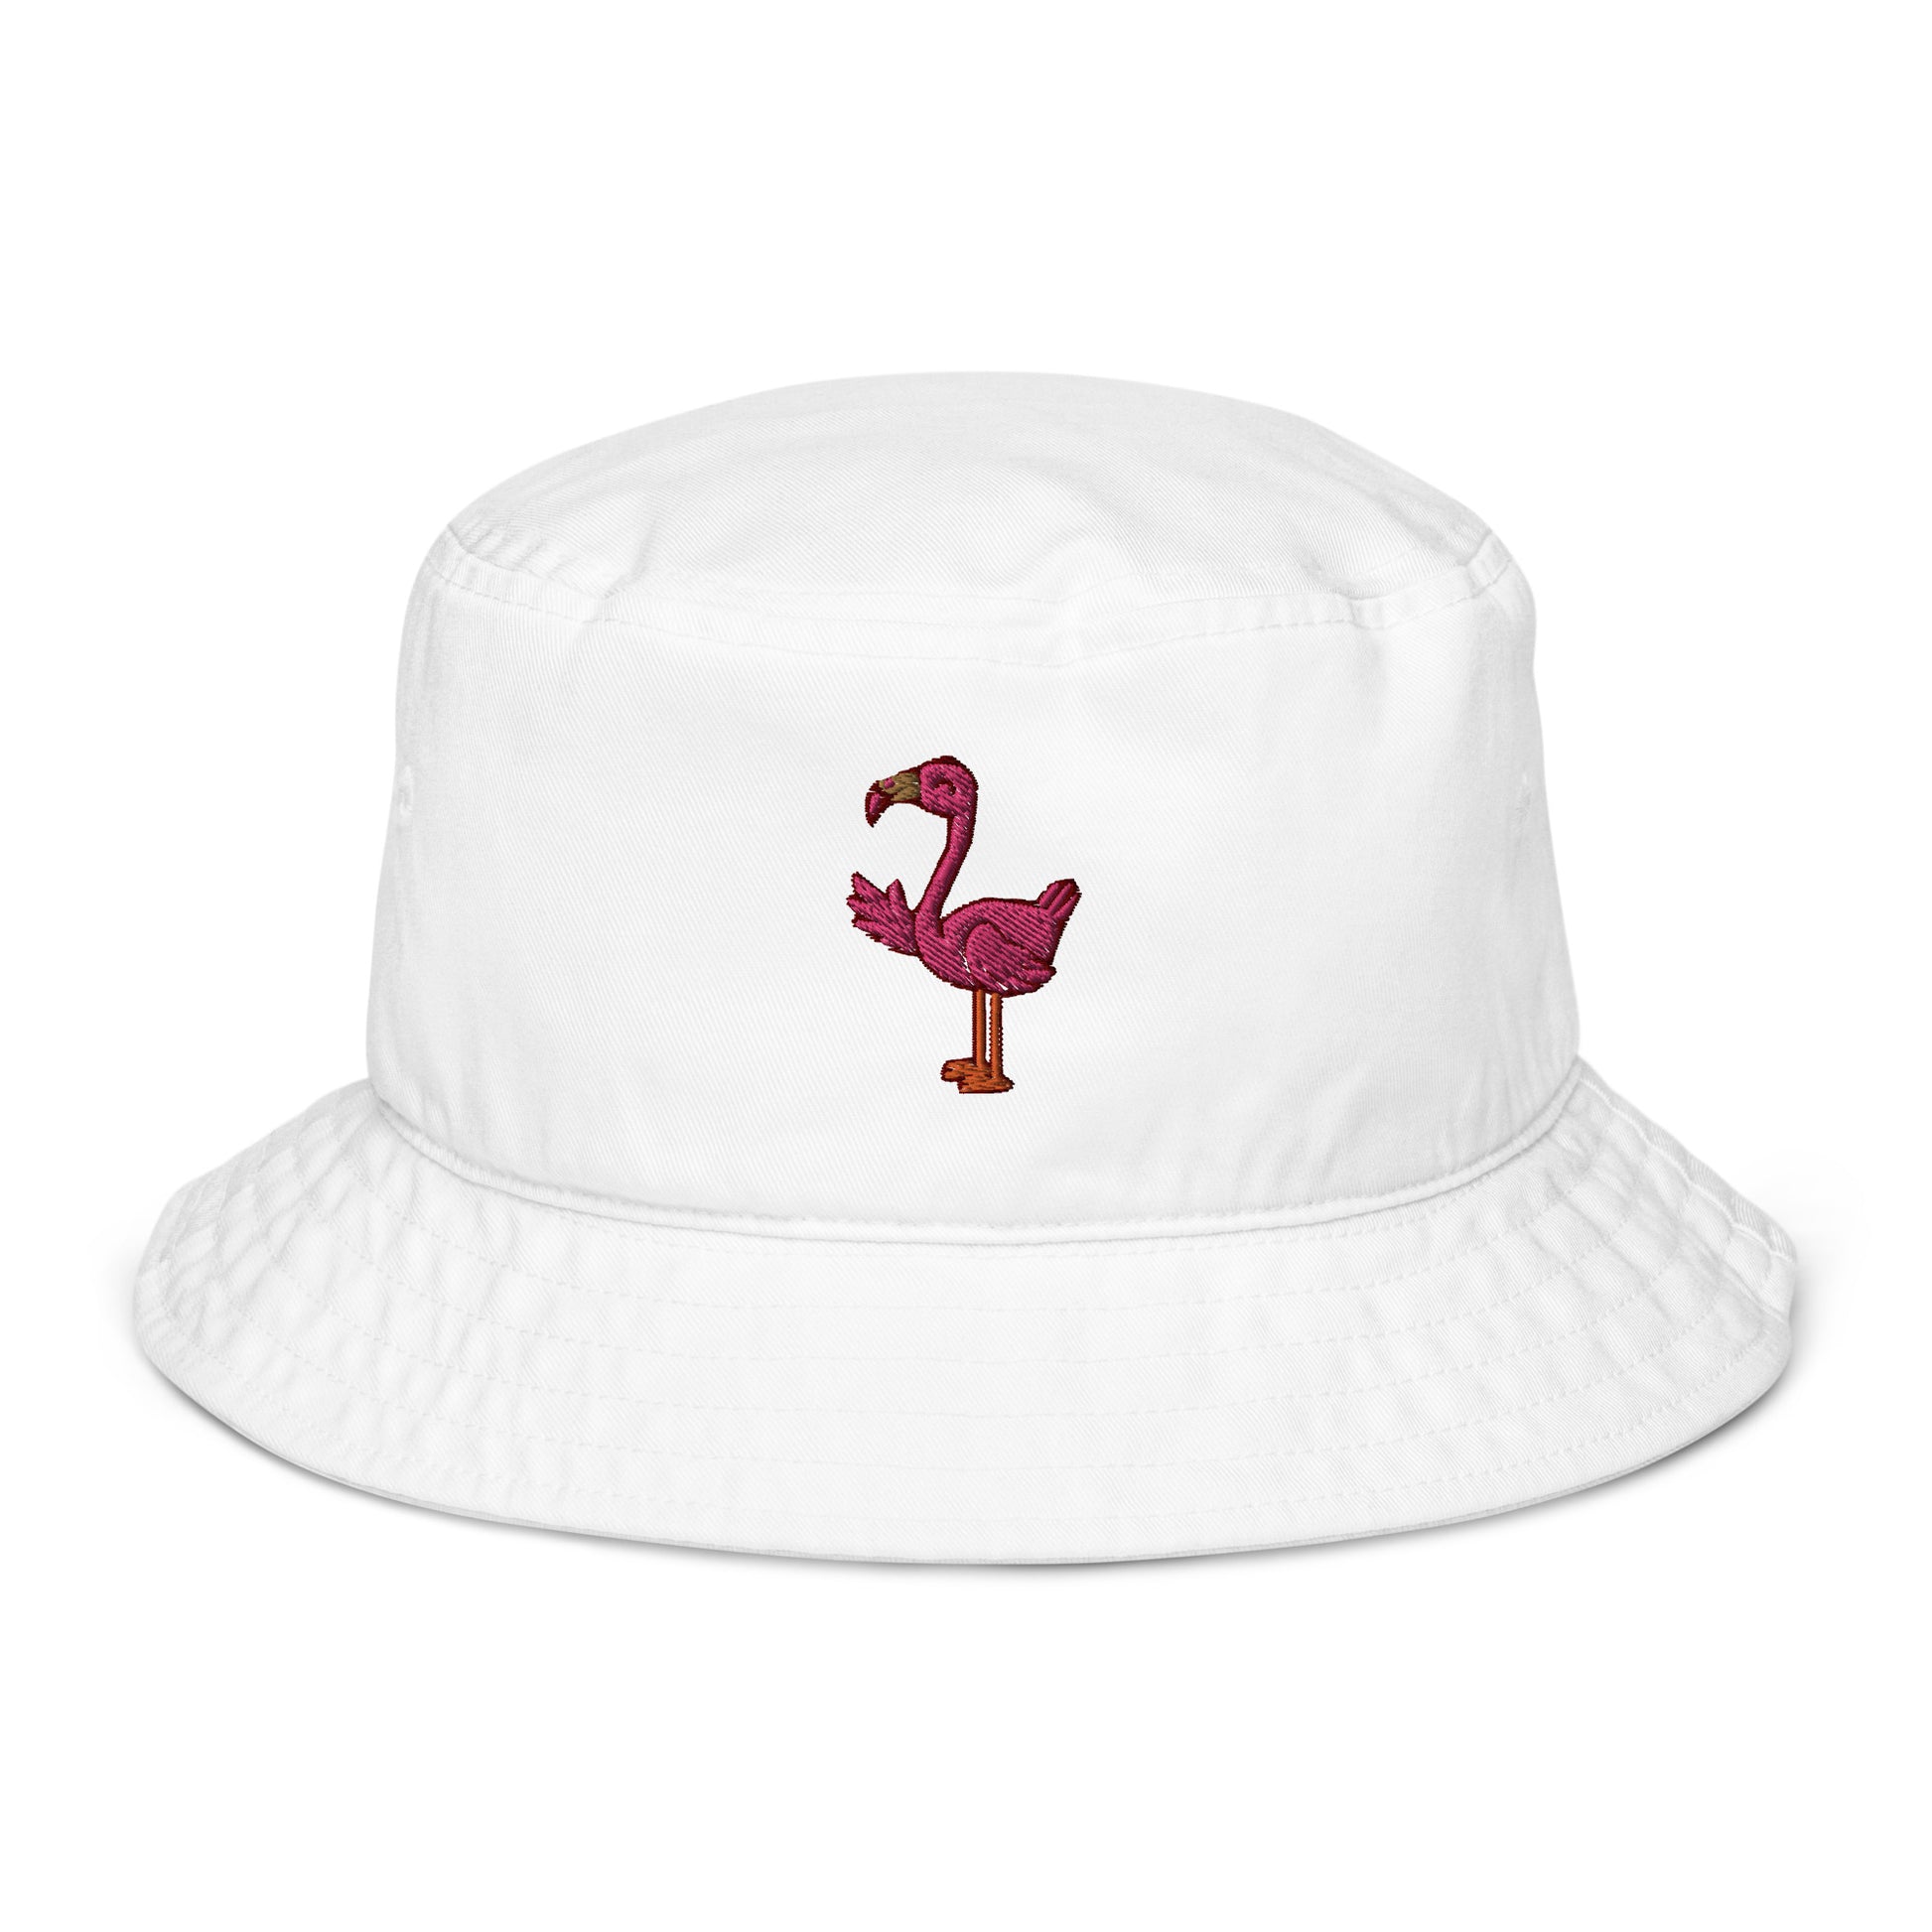 T Monogram Bucket Hat: Women's Designer Hats